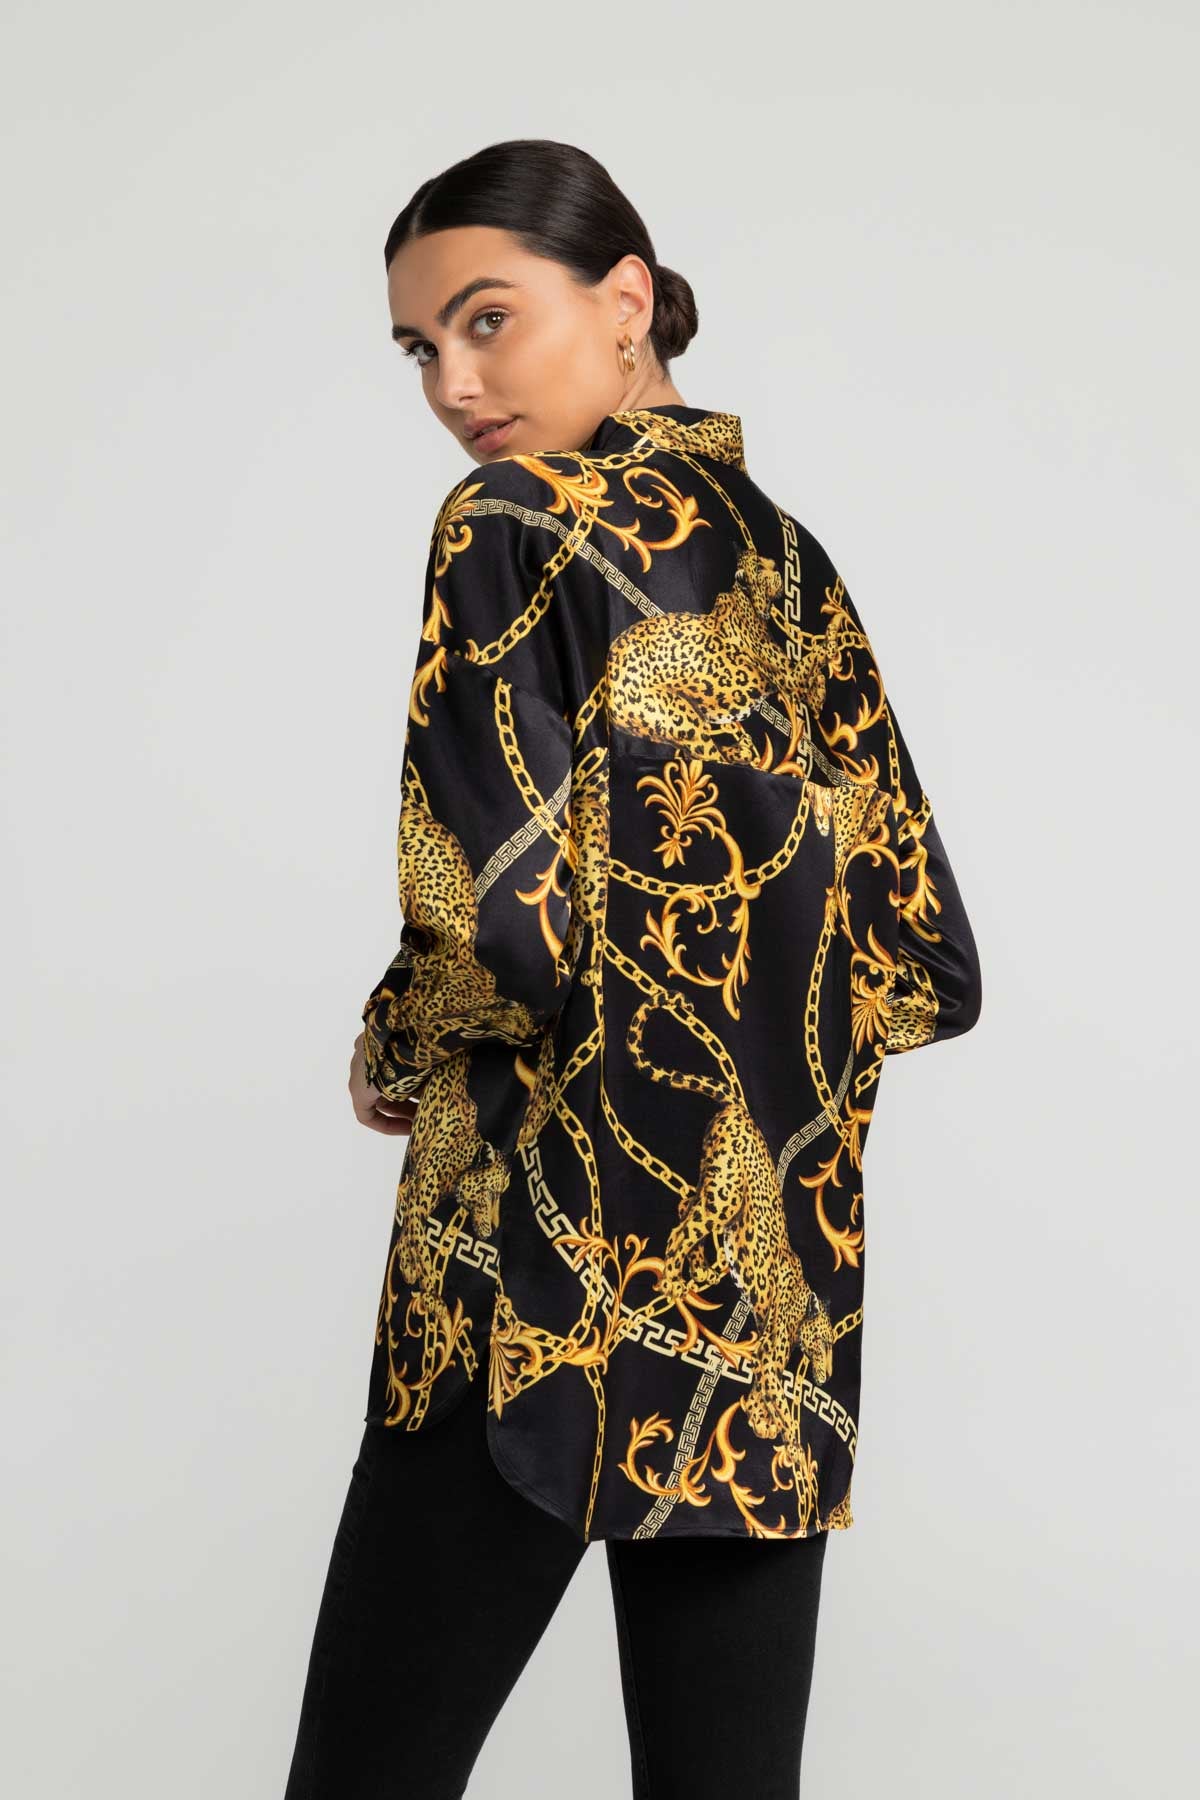 Bluse Alaiya in schwarz-goldenem Muster von LOVJOI aus ENKA™ Viskose und Ecovero™